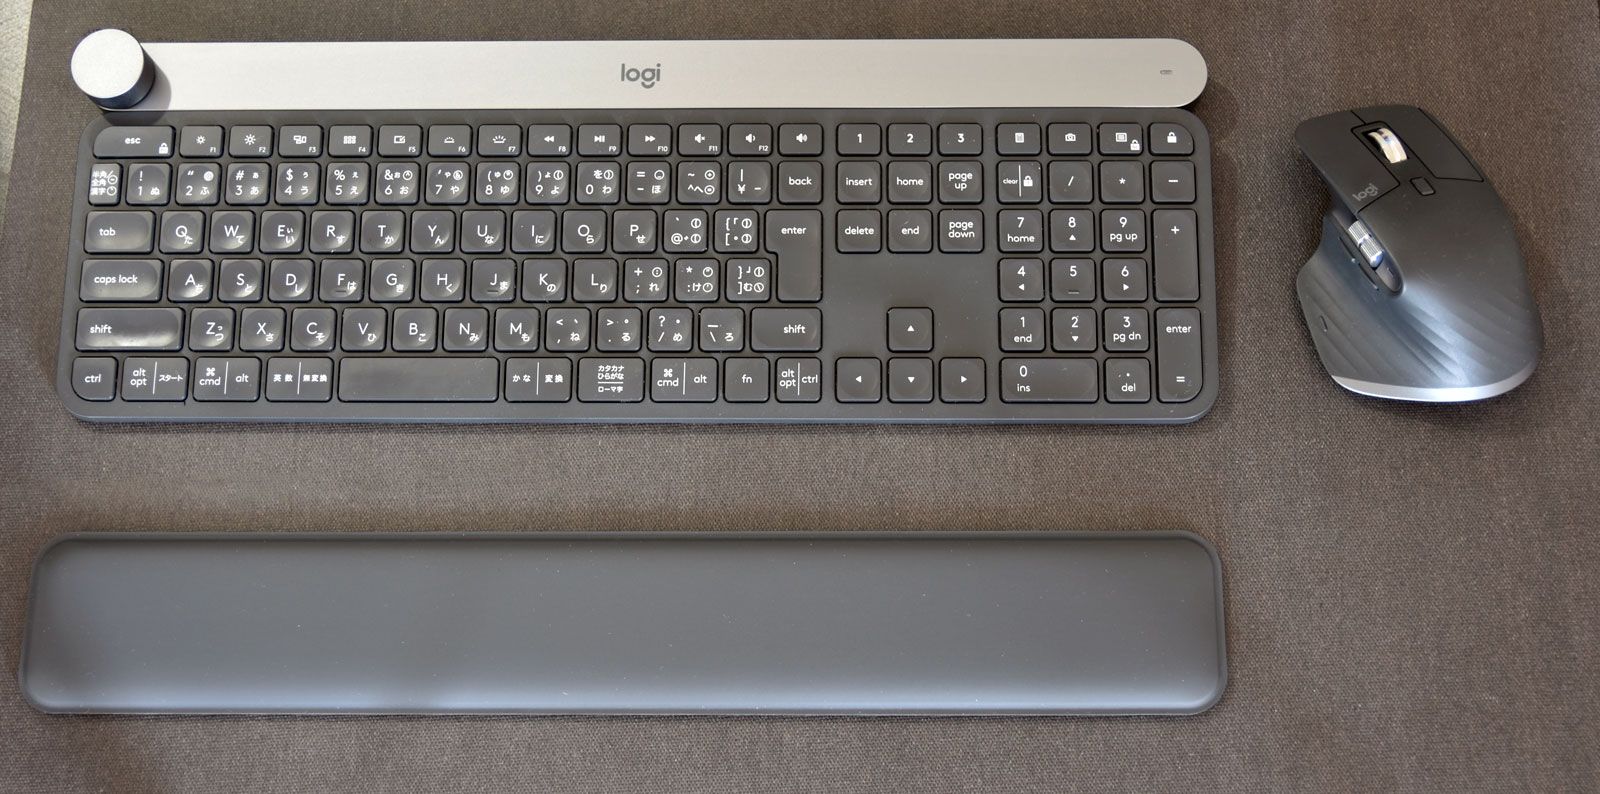 Amazonが安い!純正が一新【ズバリ!】Mac miniに最適なキーボード 